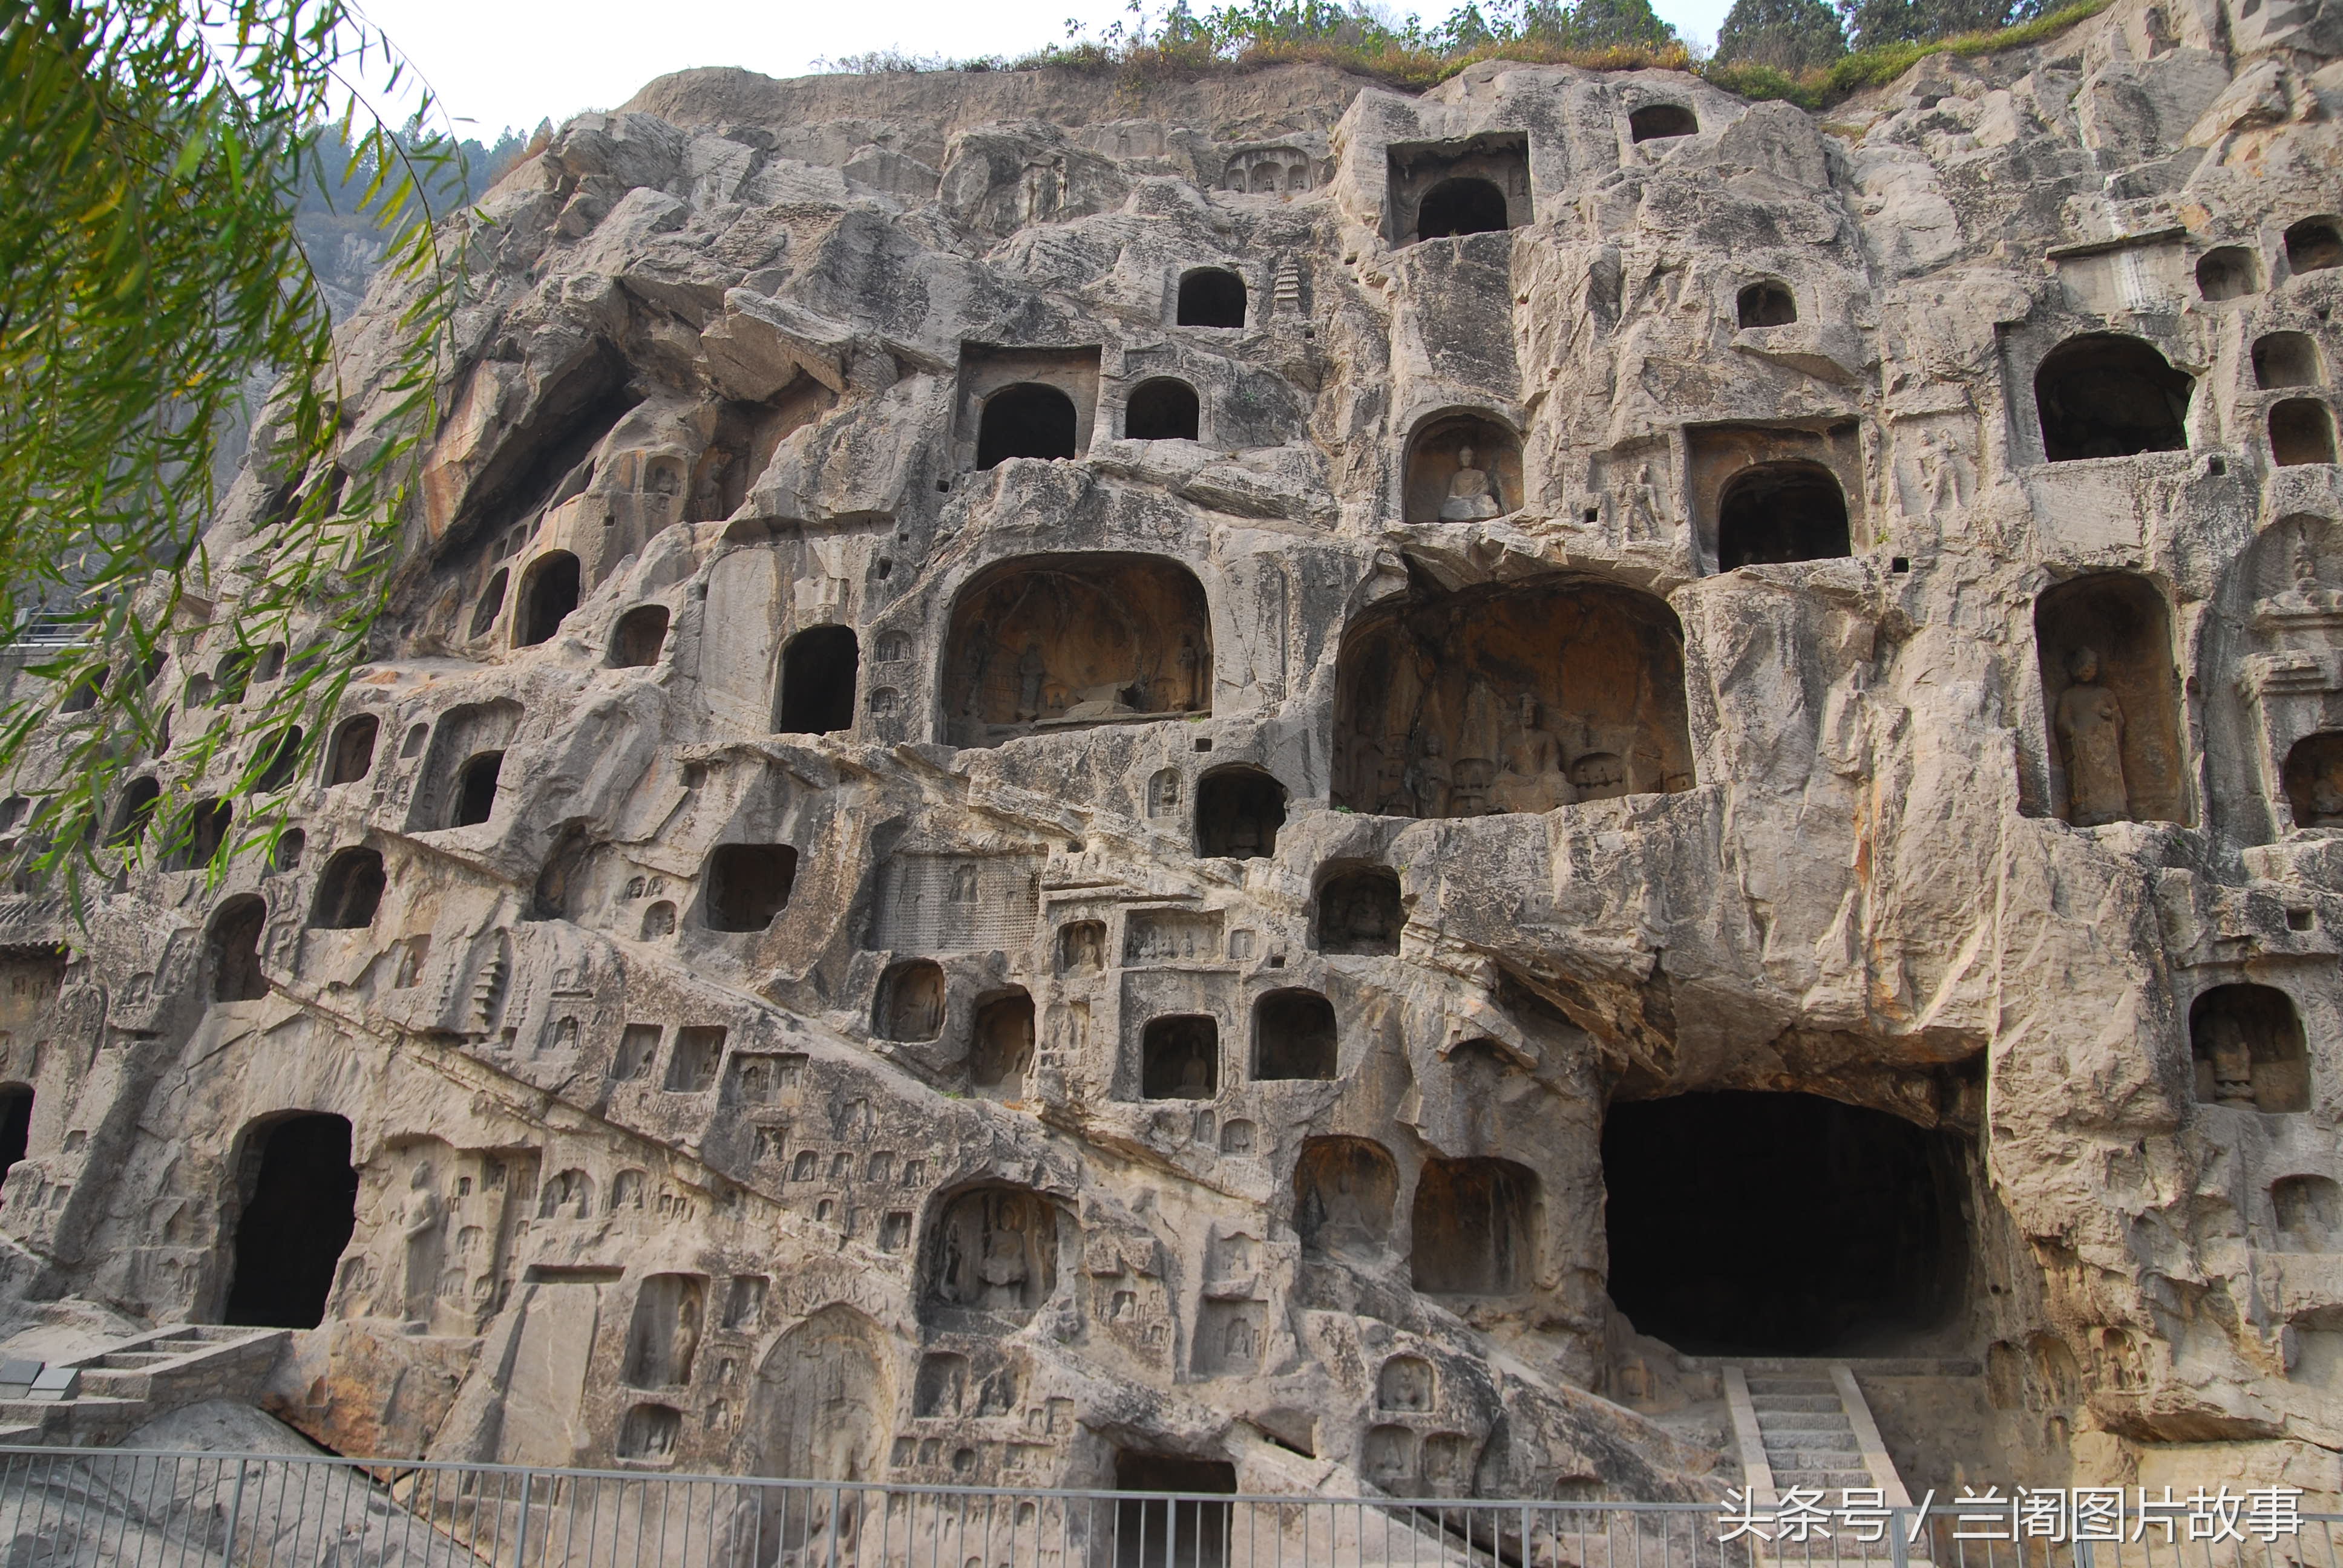 中国石刻艺术最高峰,龙门石窟佛像雕刻姿态万千,活灵活现